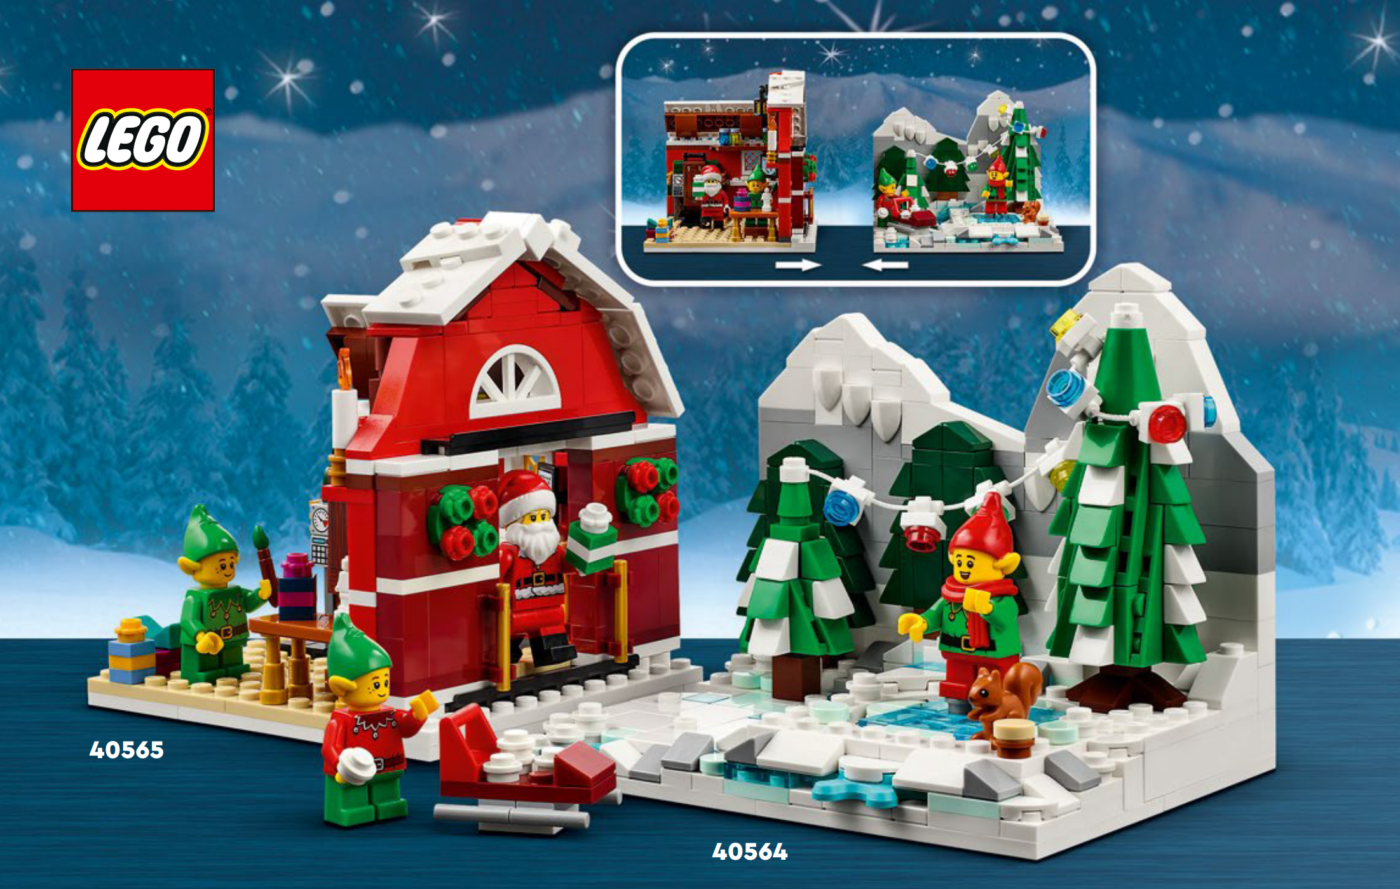 Leeds hvor ofte kopi First look at LEGO 40565 Santa's Workshop gift with purchase (GWP) - Jay's  Brick Blog